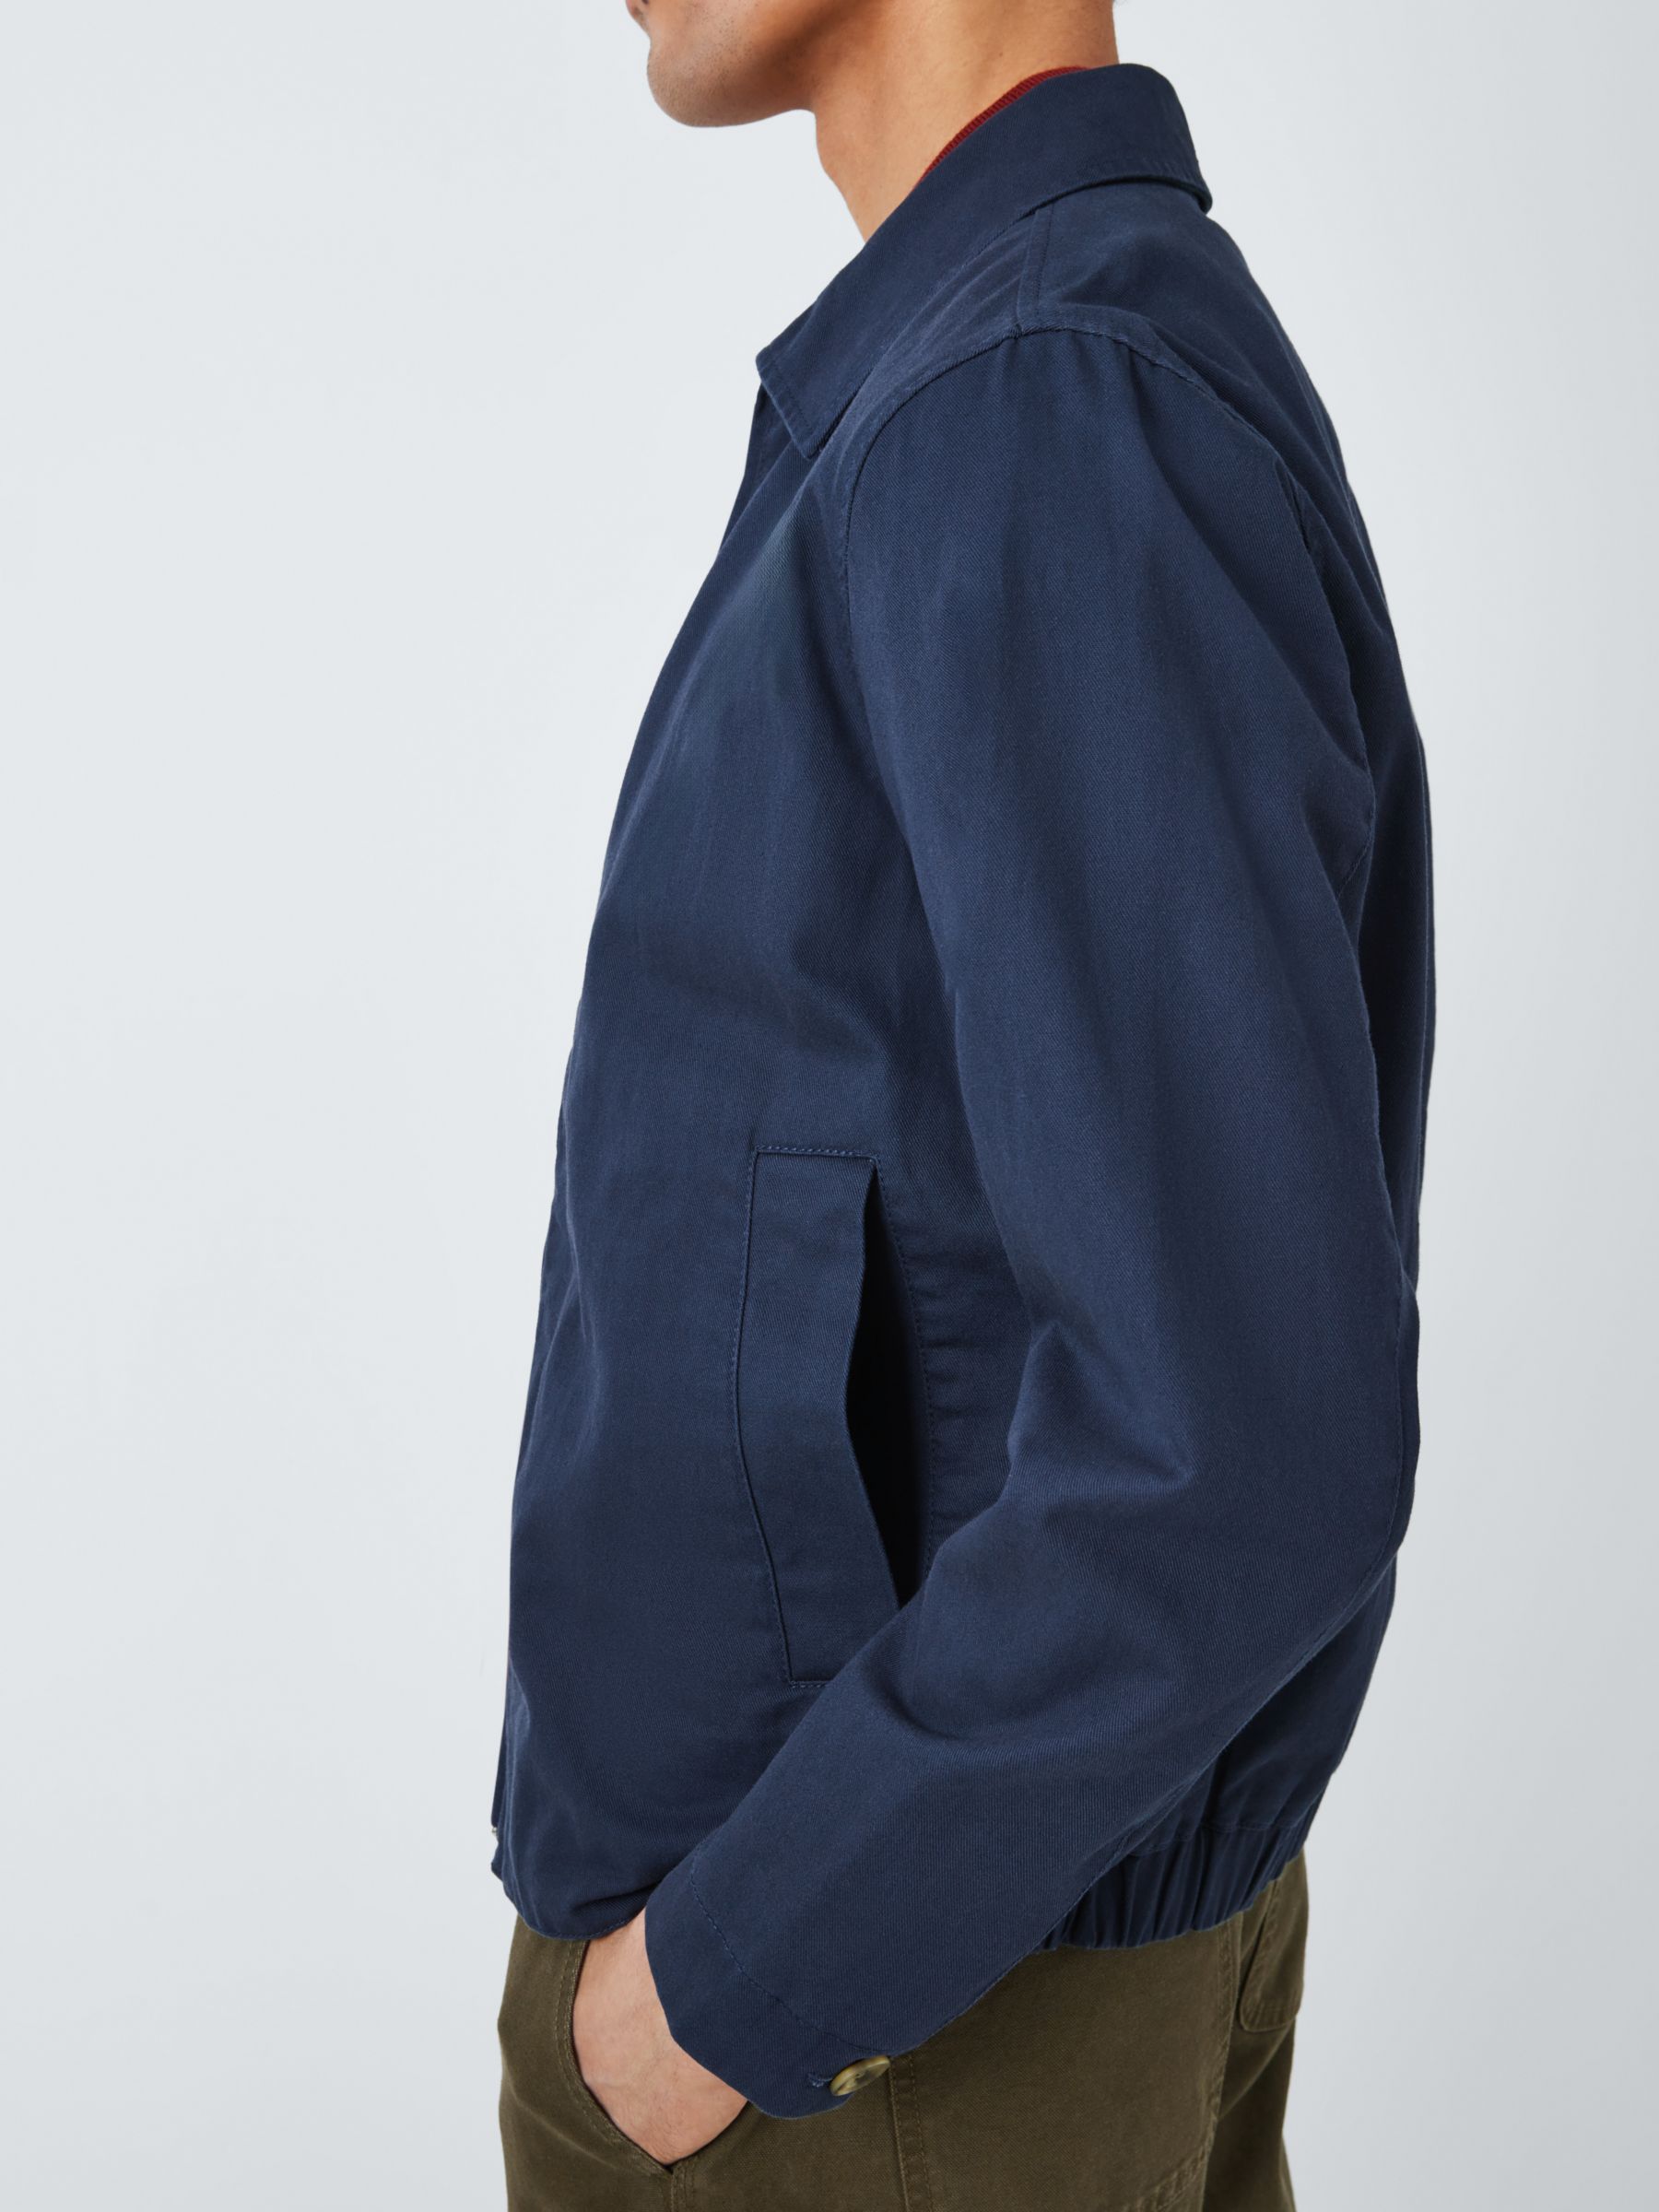 Buy John Lewis Men's Cotton Linen Zip Jacket Online at johnlewis.com